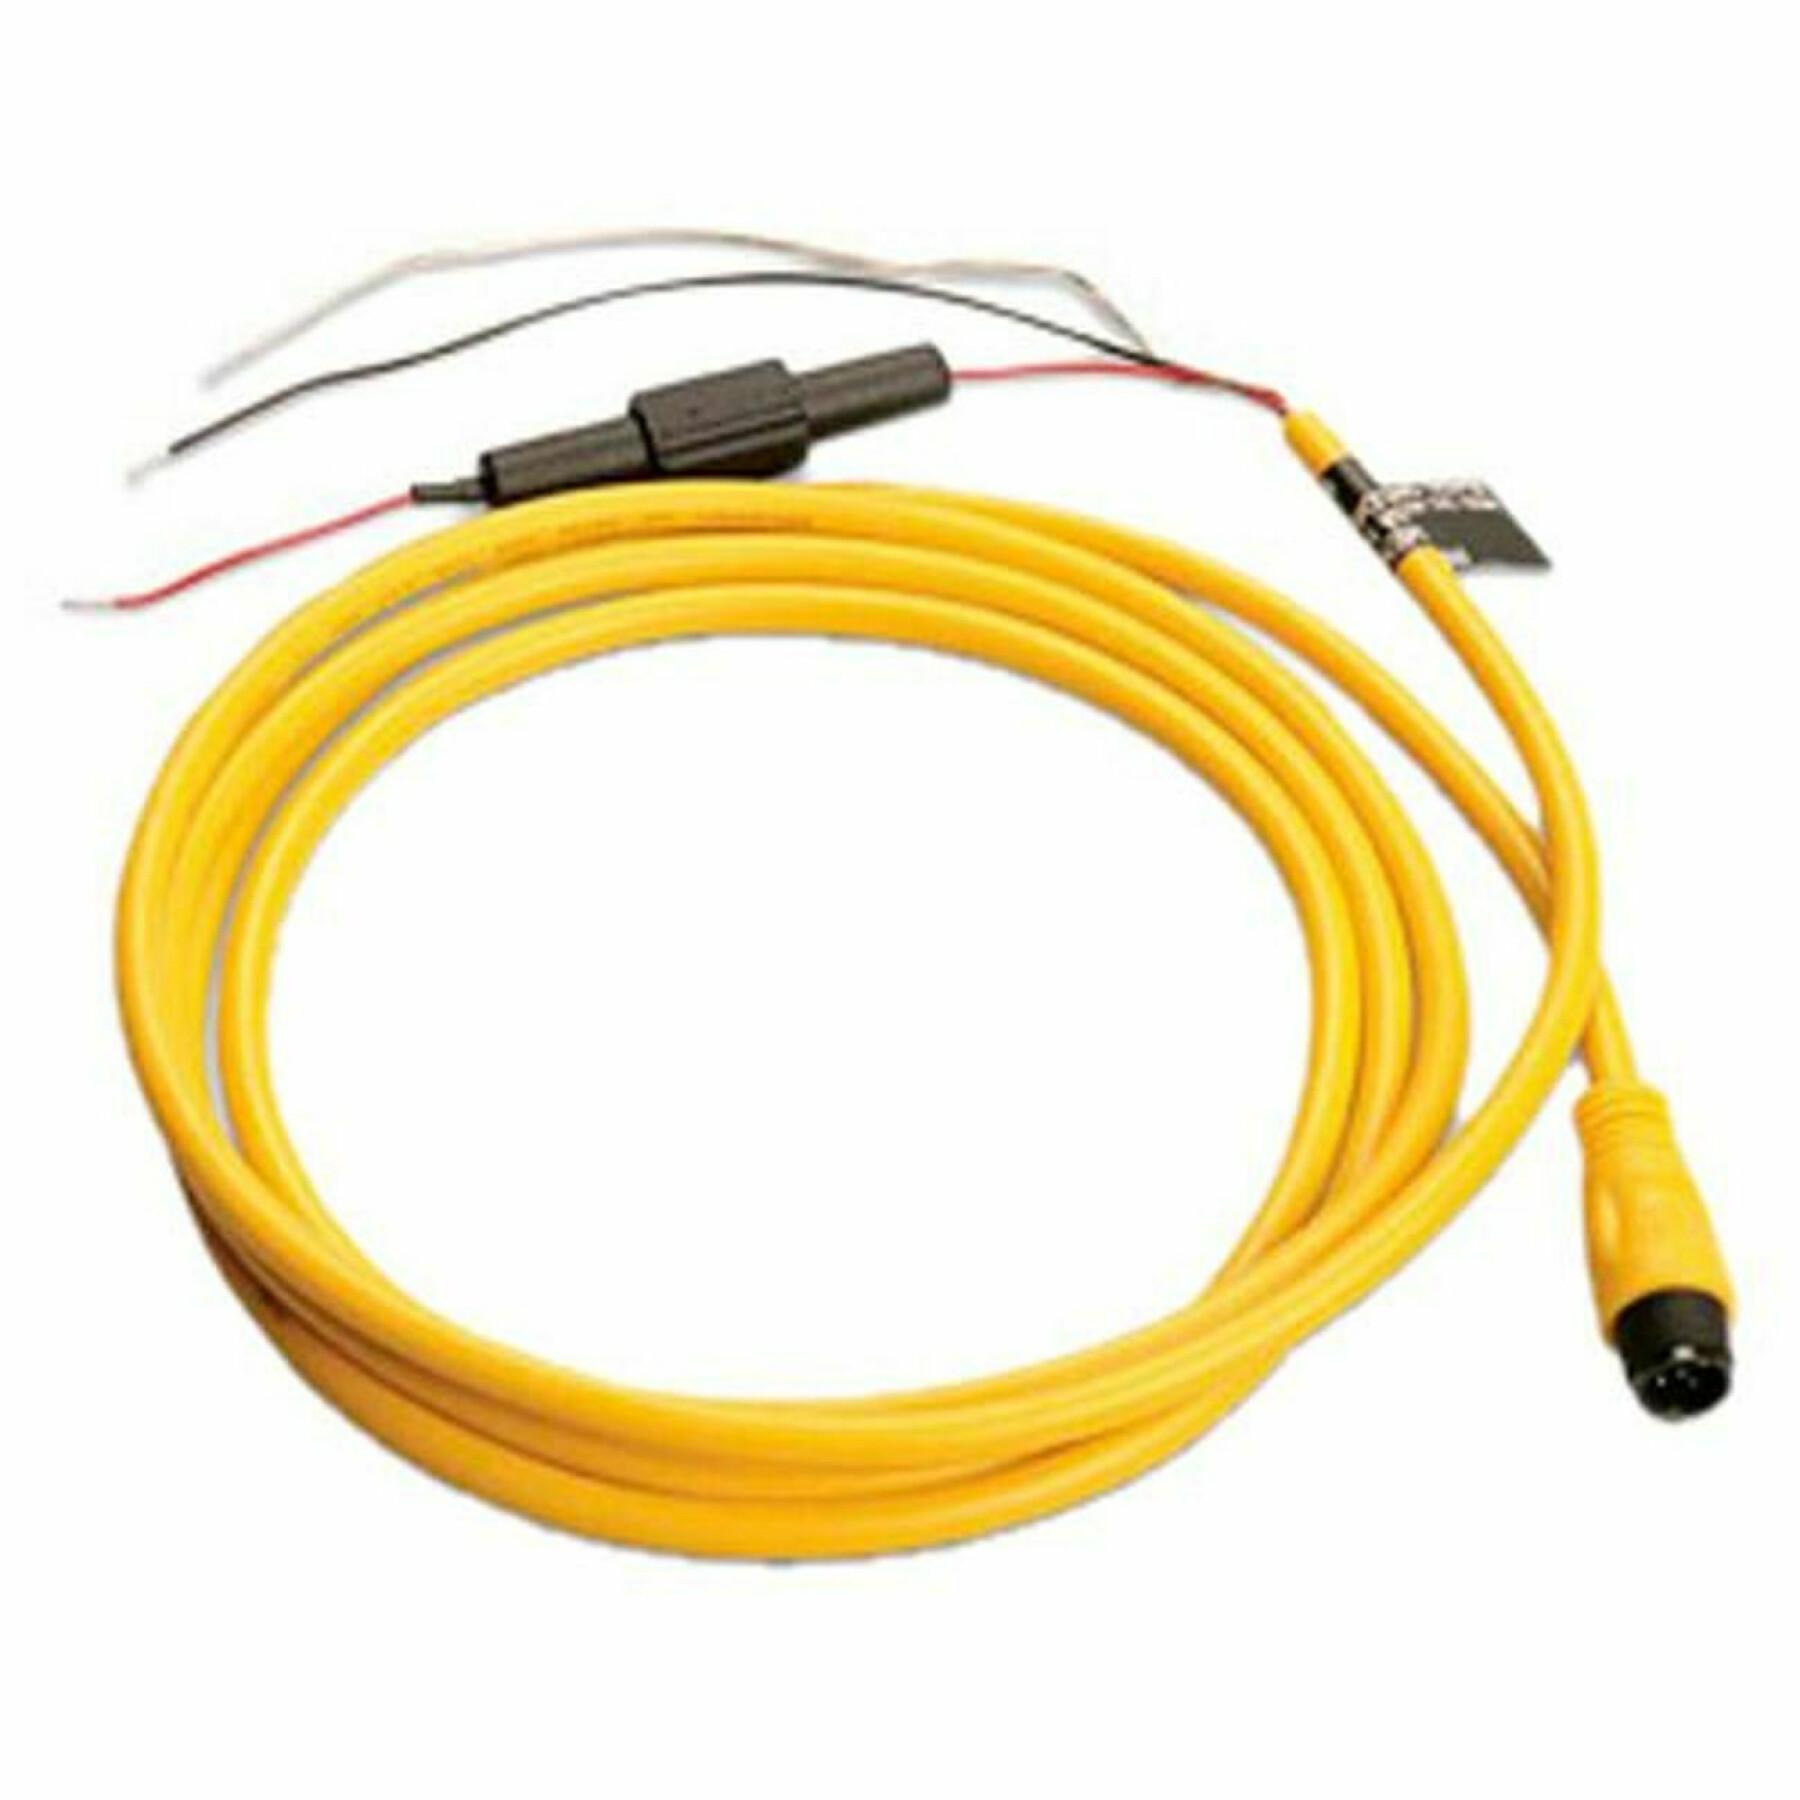 Power cable Garmin nmea 2000 2m